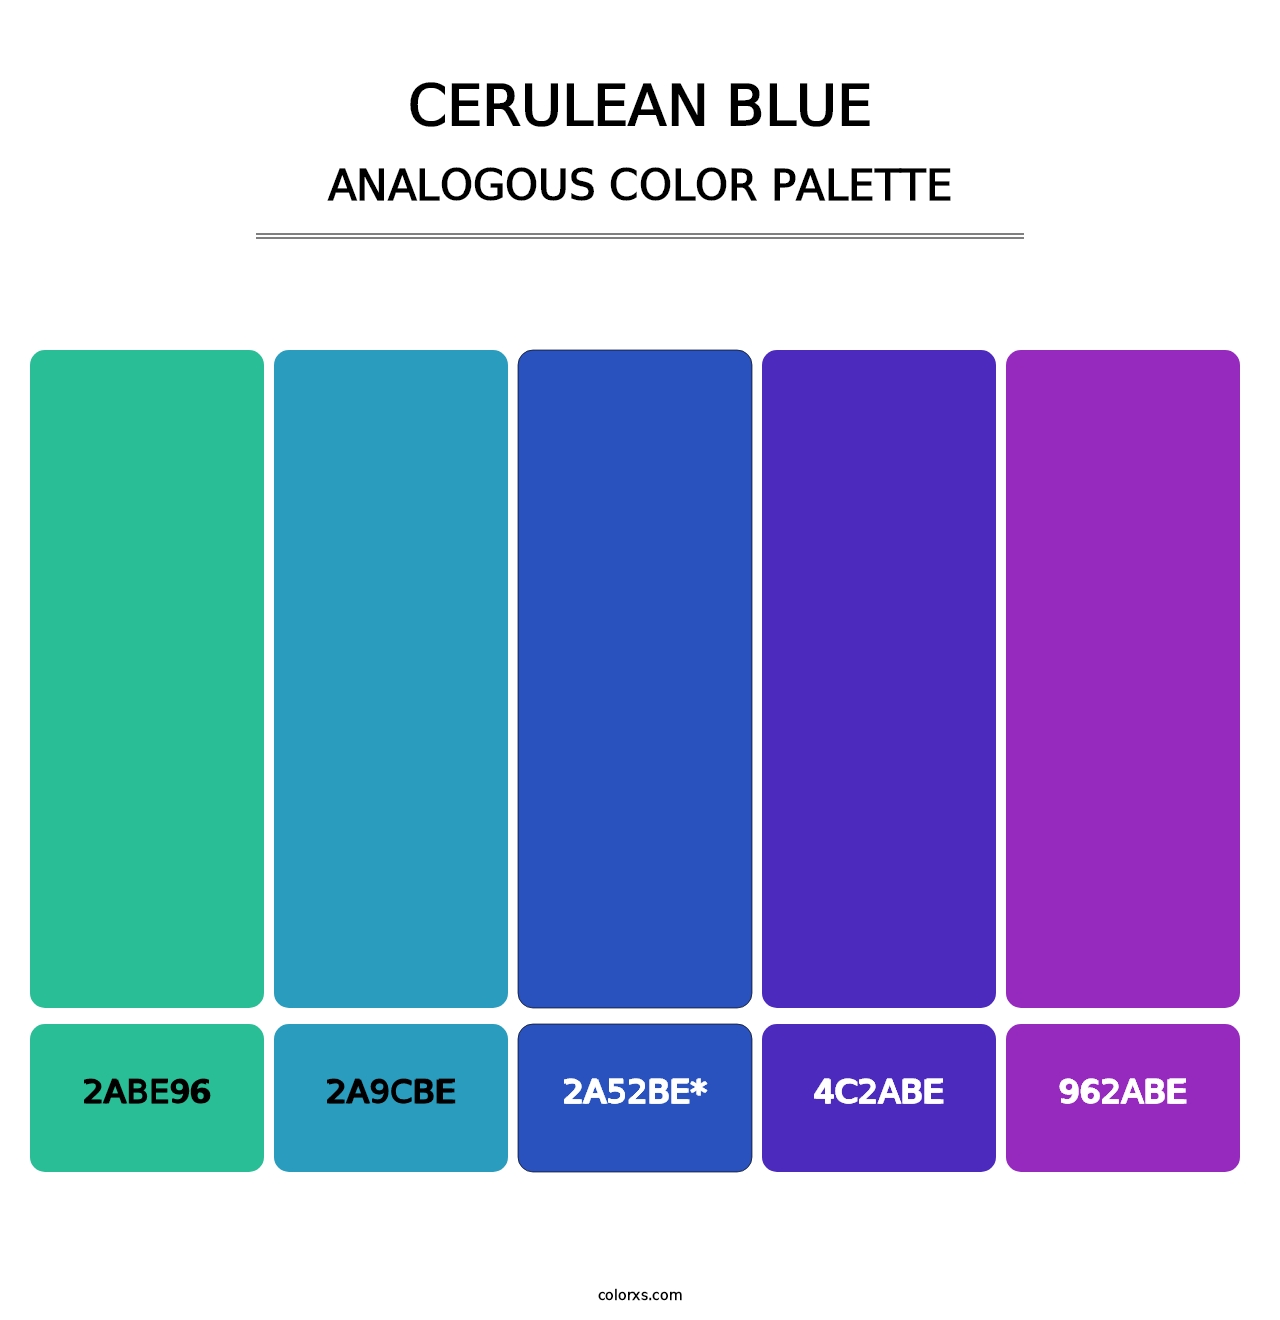 Cerulean blue - Analogous Color Palette